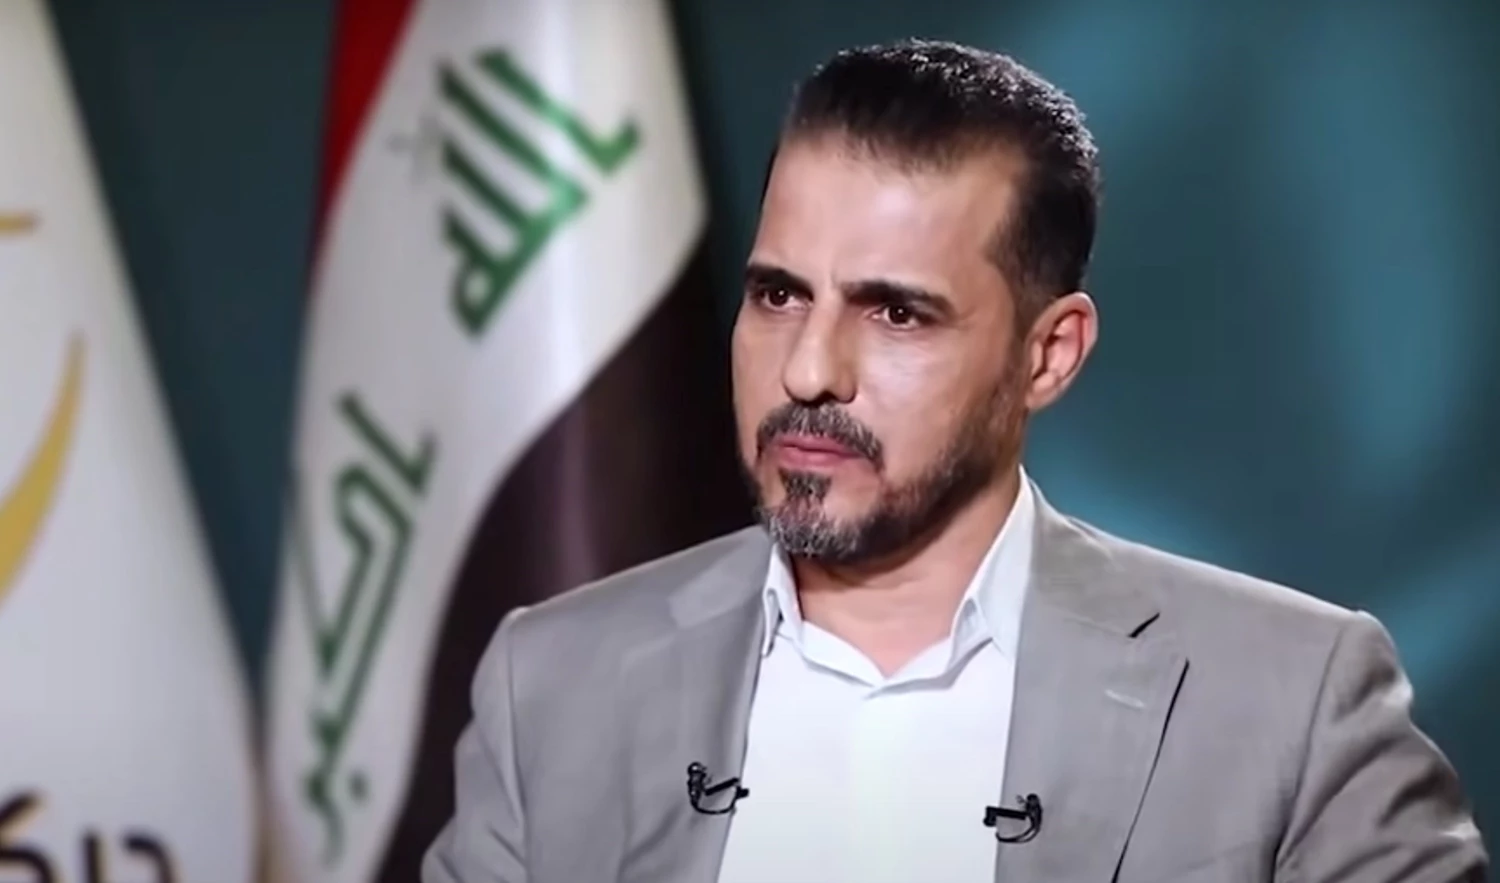 الخزانة الامريكية تدرج النائب حسين مؤنس على لائحة العقوبات: خطط لاختطاف واغتيال عراقيين